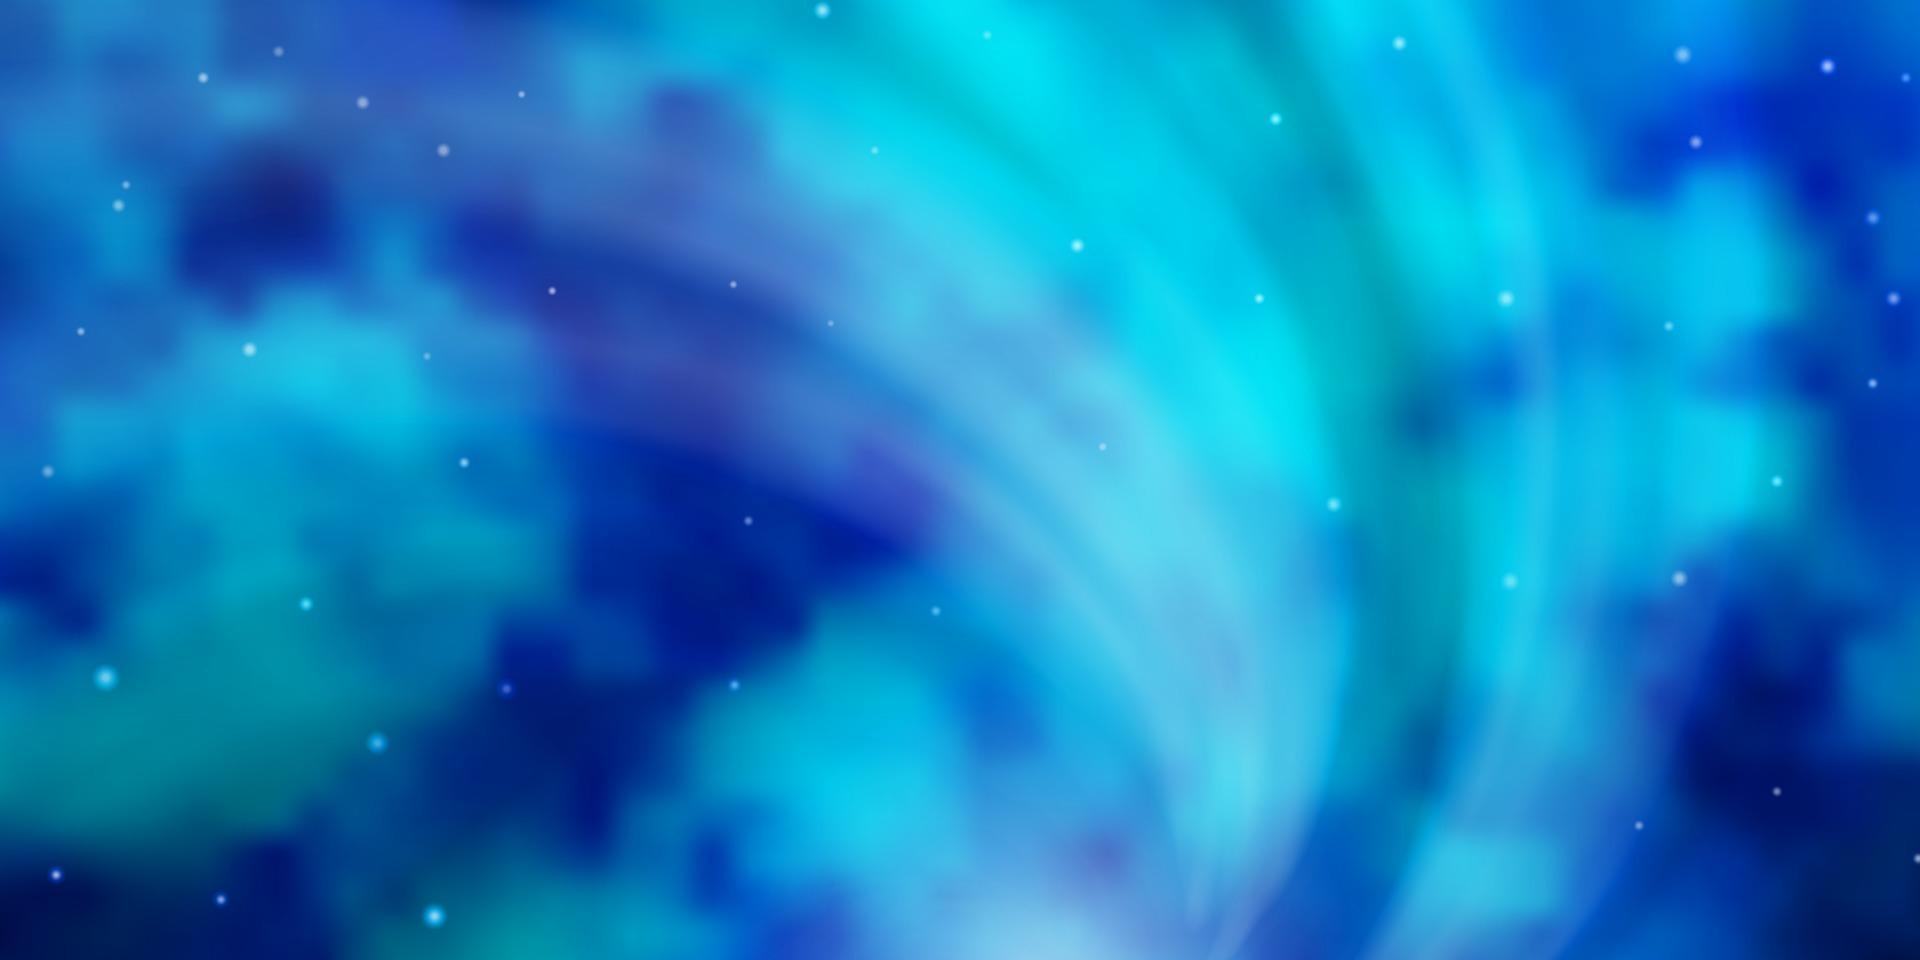 sfondo vettoriale azzurro con stelle colorate.